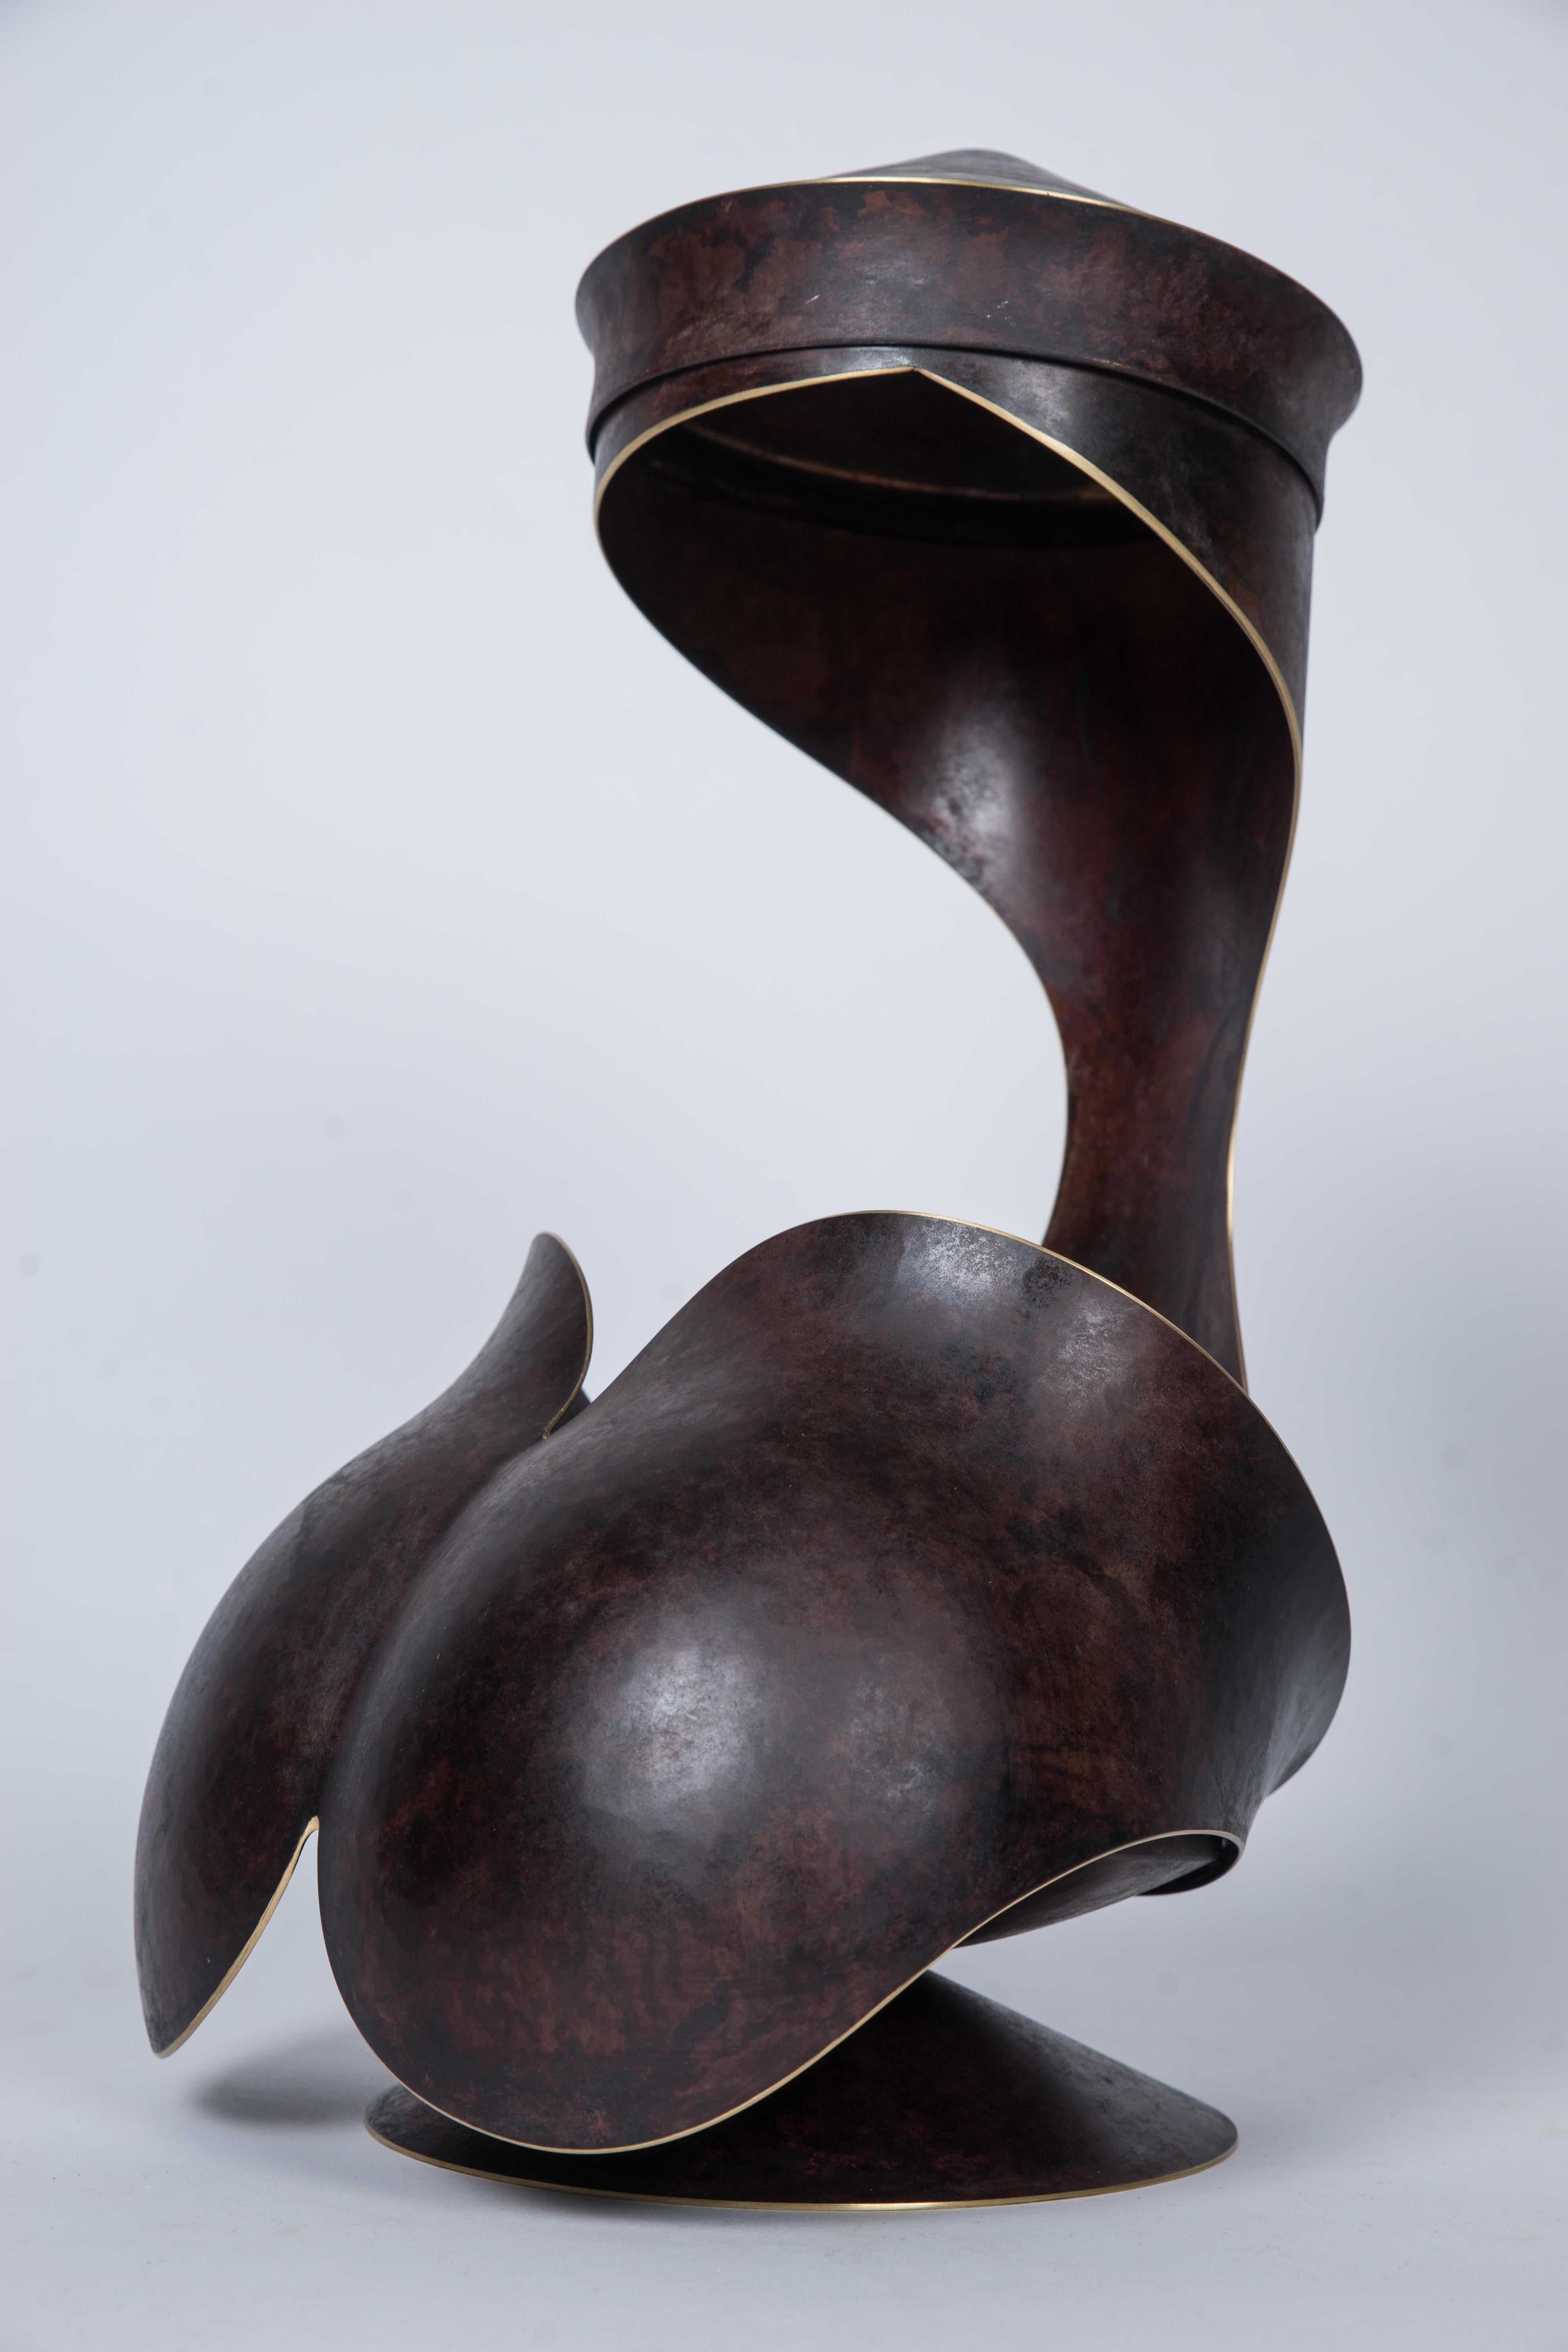 Elie Hirsch Abstract Sculpture - "Ariane" Brass Sculpture